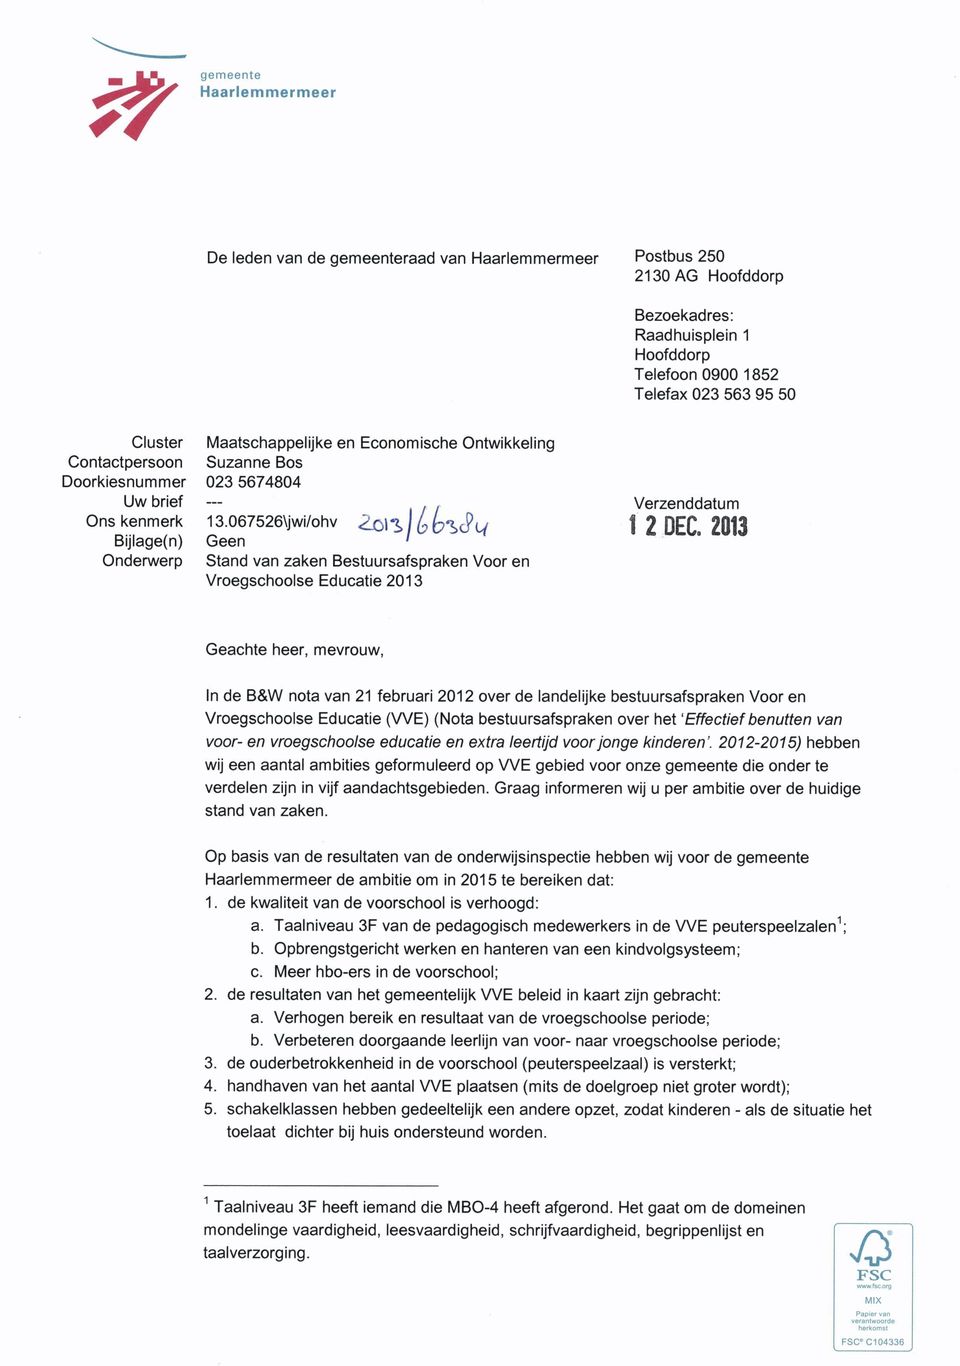 067526\jwi/ohv 2oil> l ^ ^cpo/ Geen ' Stand van zaken Bestuursafspraken Voor en Vroegschoolse Educatie 2013 Verzenddatum 1 2 OEC.